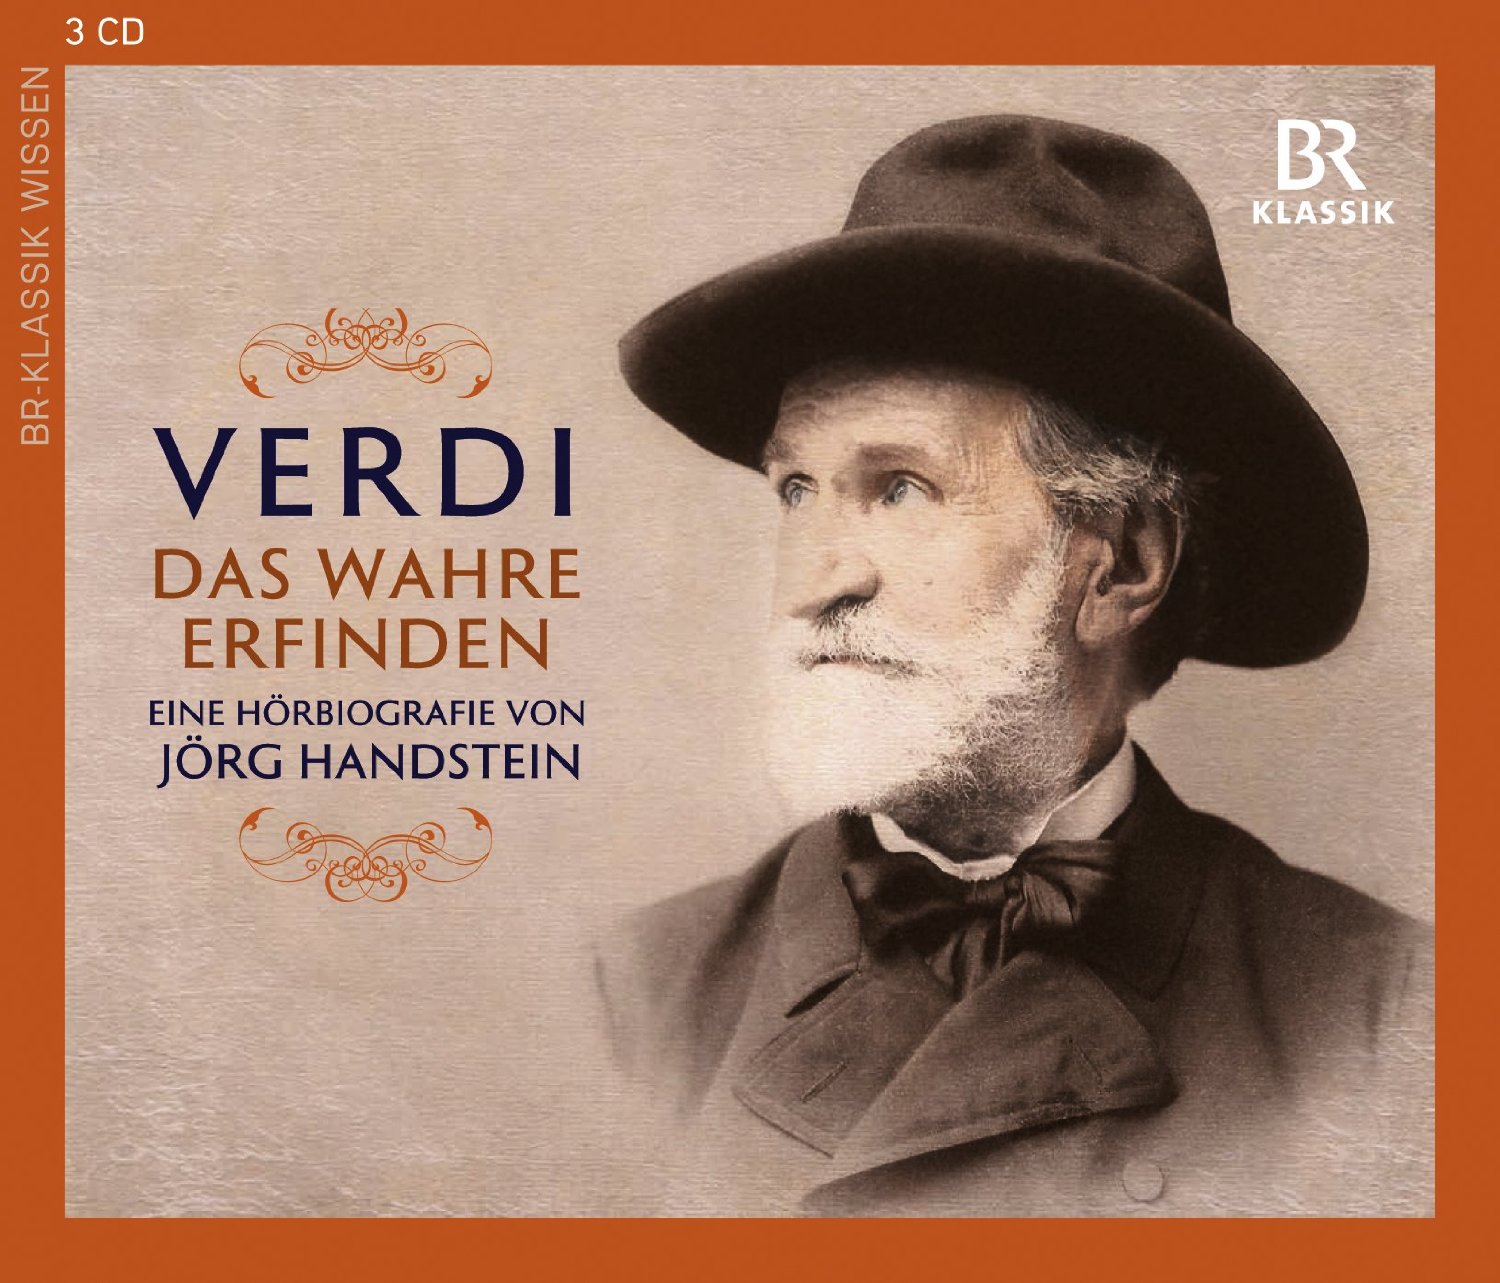 Audio Cd Giuseppe Verdi - Das Wahre Erfinden (3 Cd) NUOVO SIGILLATO, EDIZIONE DEL 28/11/2010 SUBITO DISPONIBILE